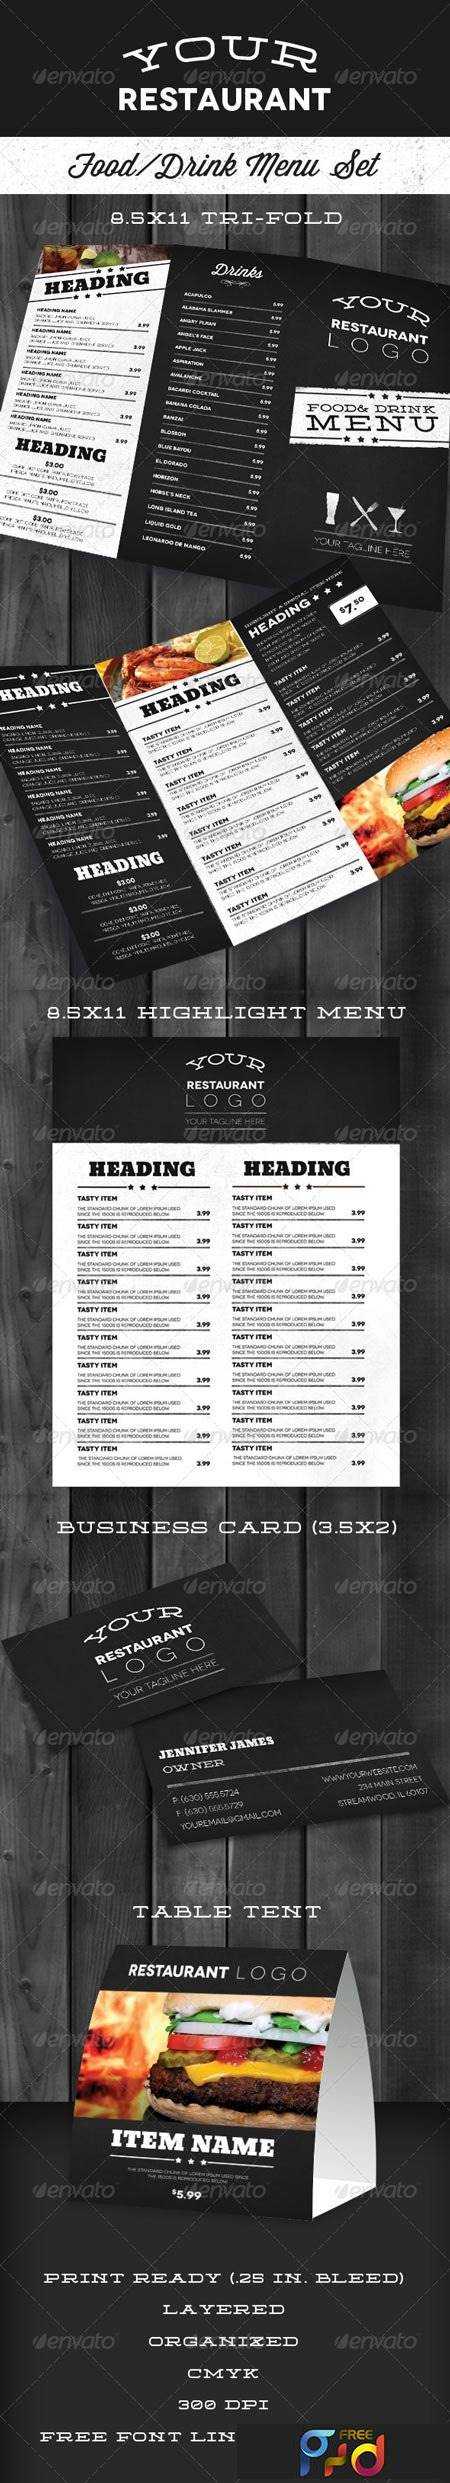 freepsdvn-com_1394805919_modern-restaurant-menu-set-6953169